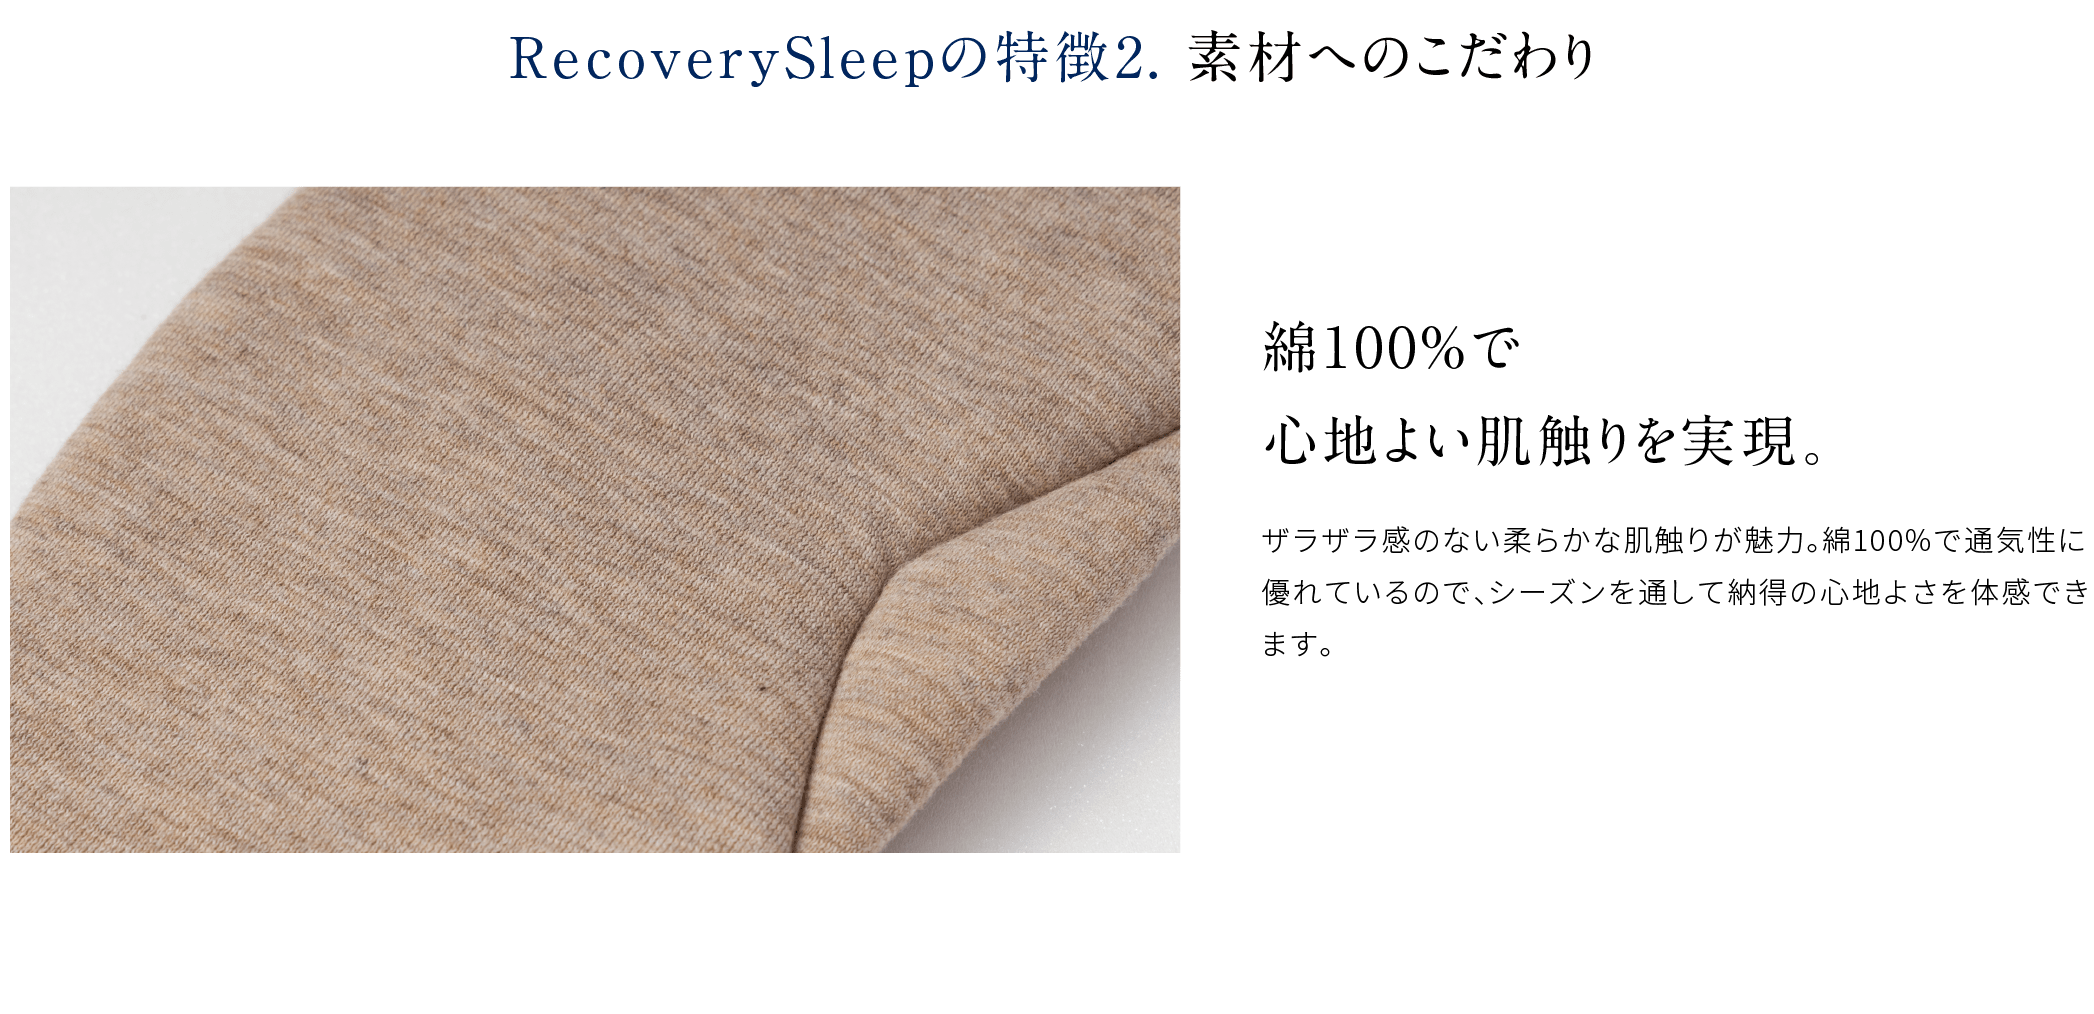 RecoverySleepの特徴2. 素材へのこだわり 綿100%で心地よい肌触りを実現。ザラザラ感のない柔らかな肌触りが魅力。綿100%で通気性に優れているので、シーズンを通して納得の心地よさを体感できます。